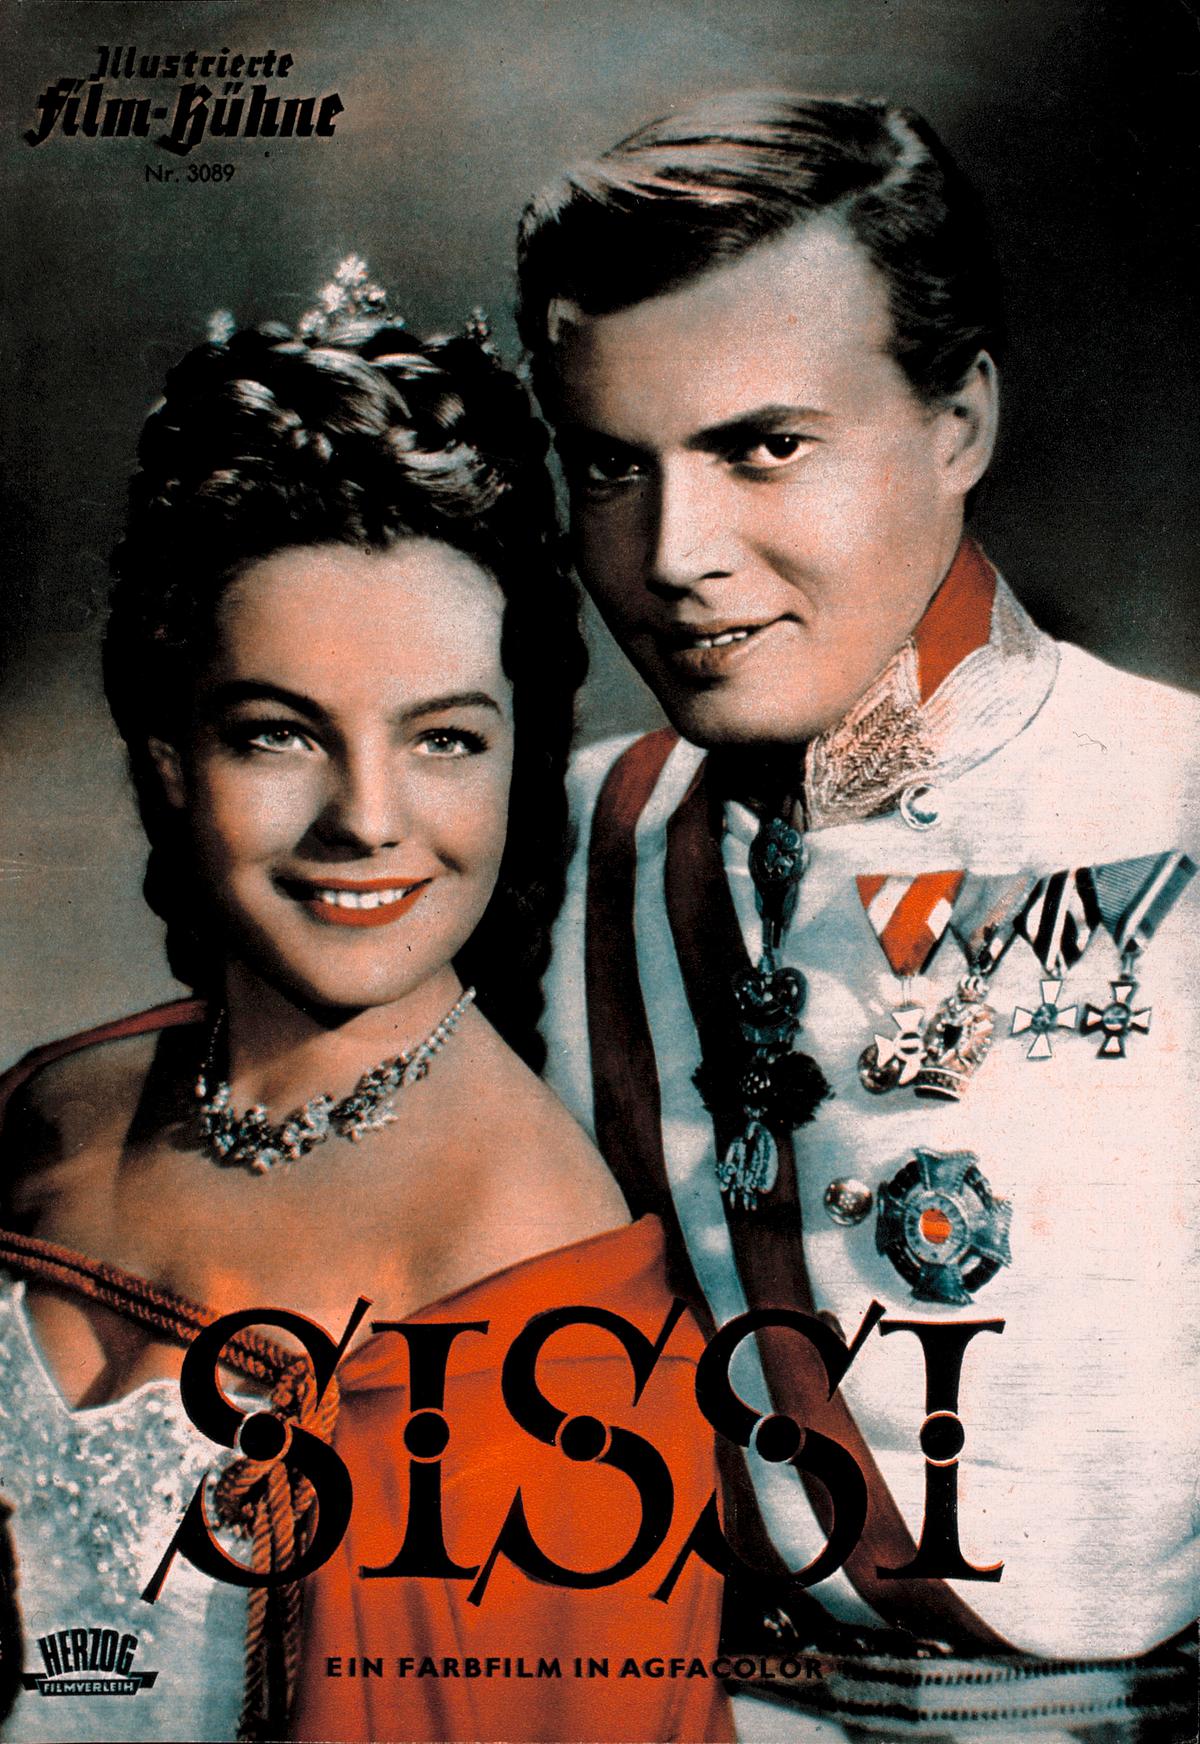 Plakat für Sissi, 1955: Der Erfolg der Sissi Filme machte Romy Schneider berühmt